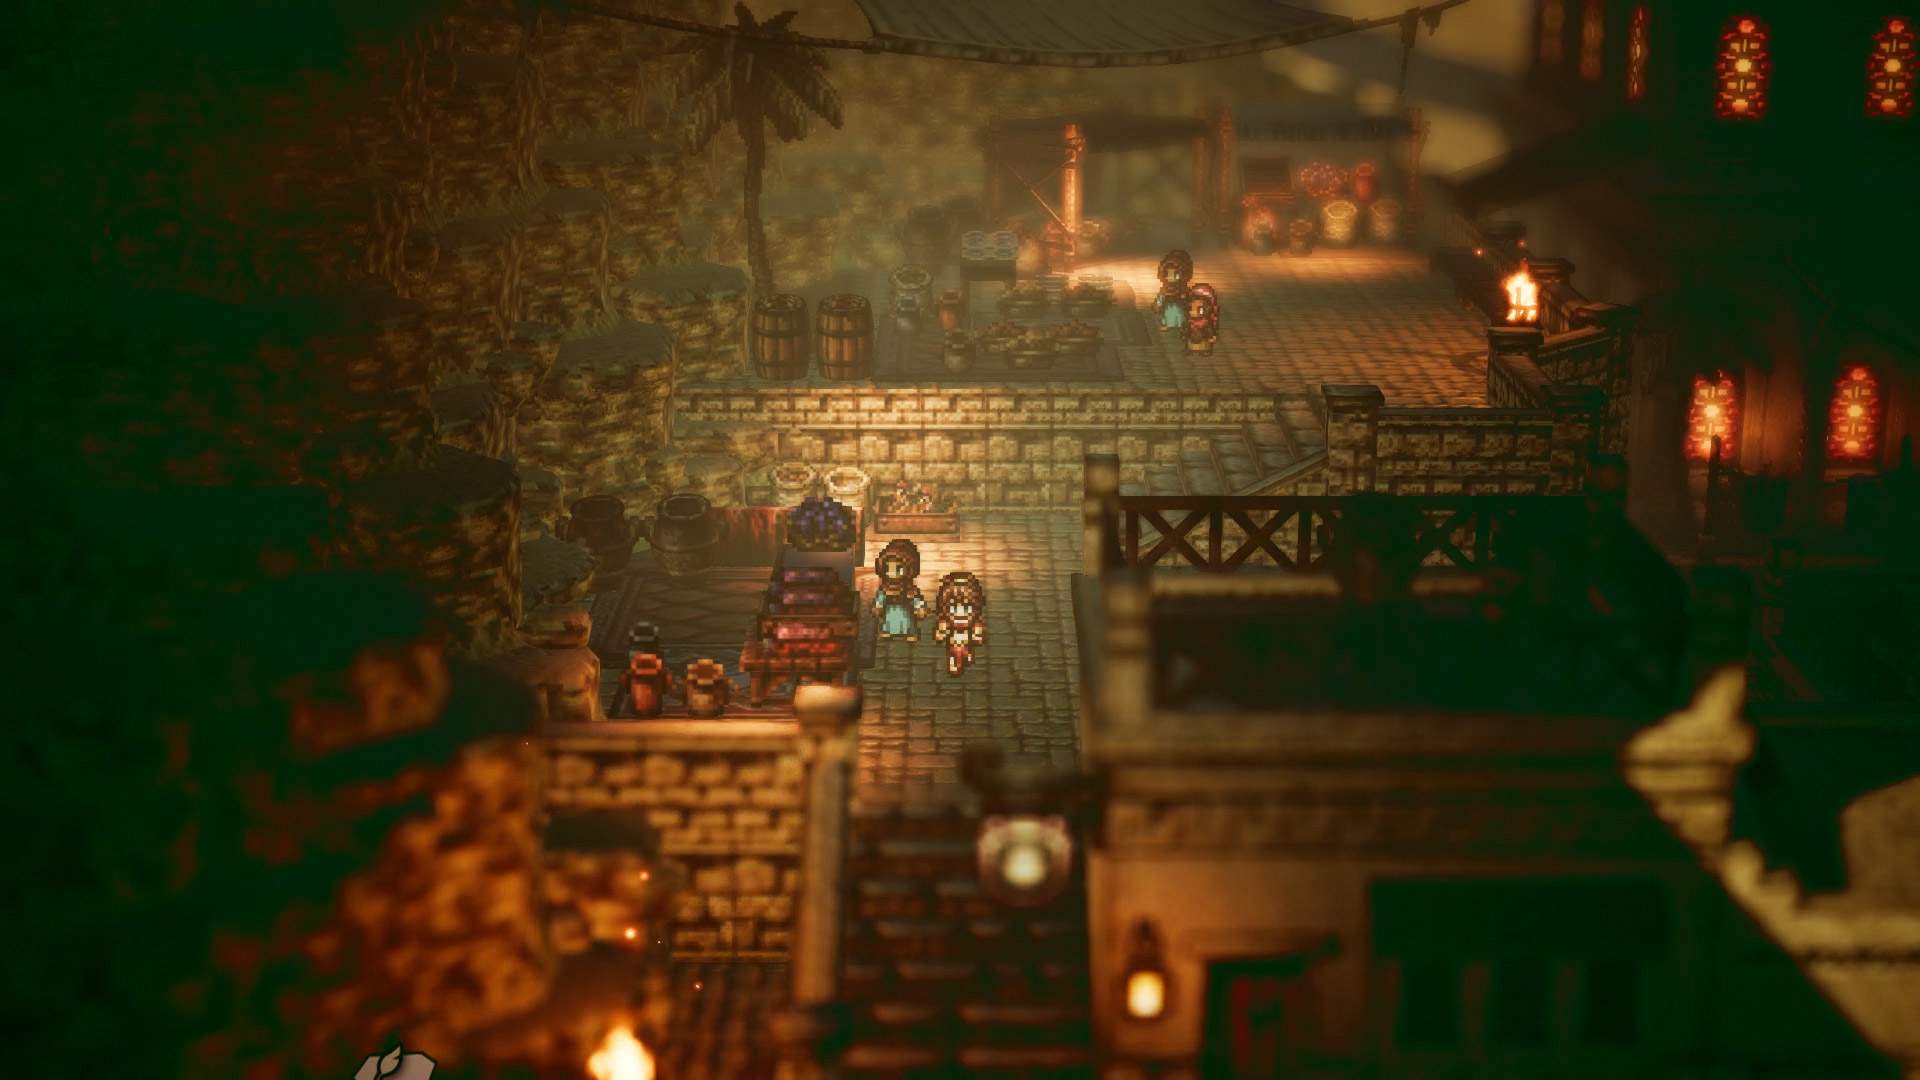 Captura de pantalla del juego que muestra a Primrose adelantando a otro personaje en una ciudad de estilo medieval.